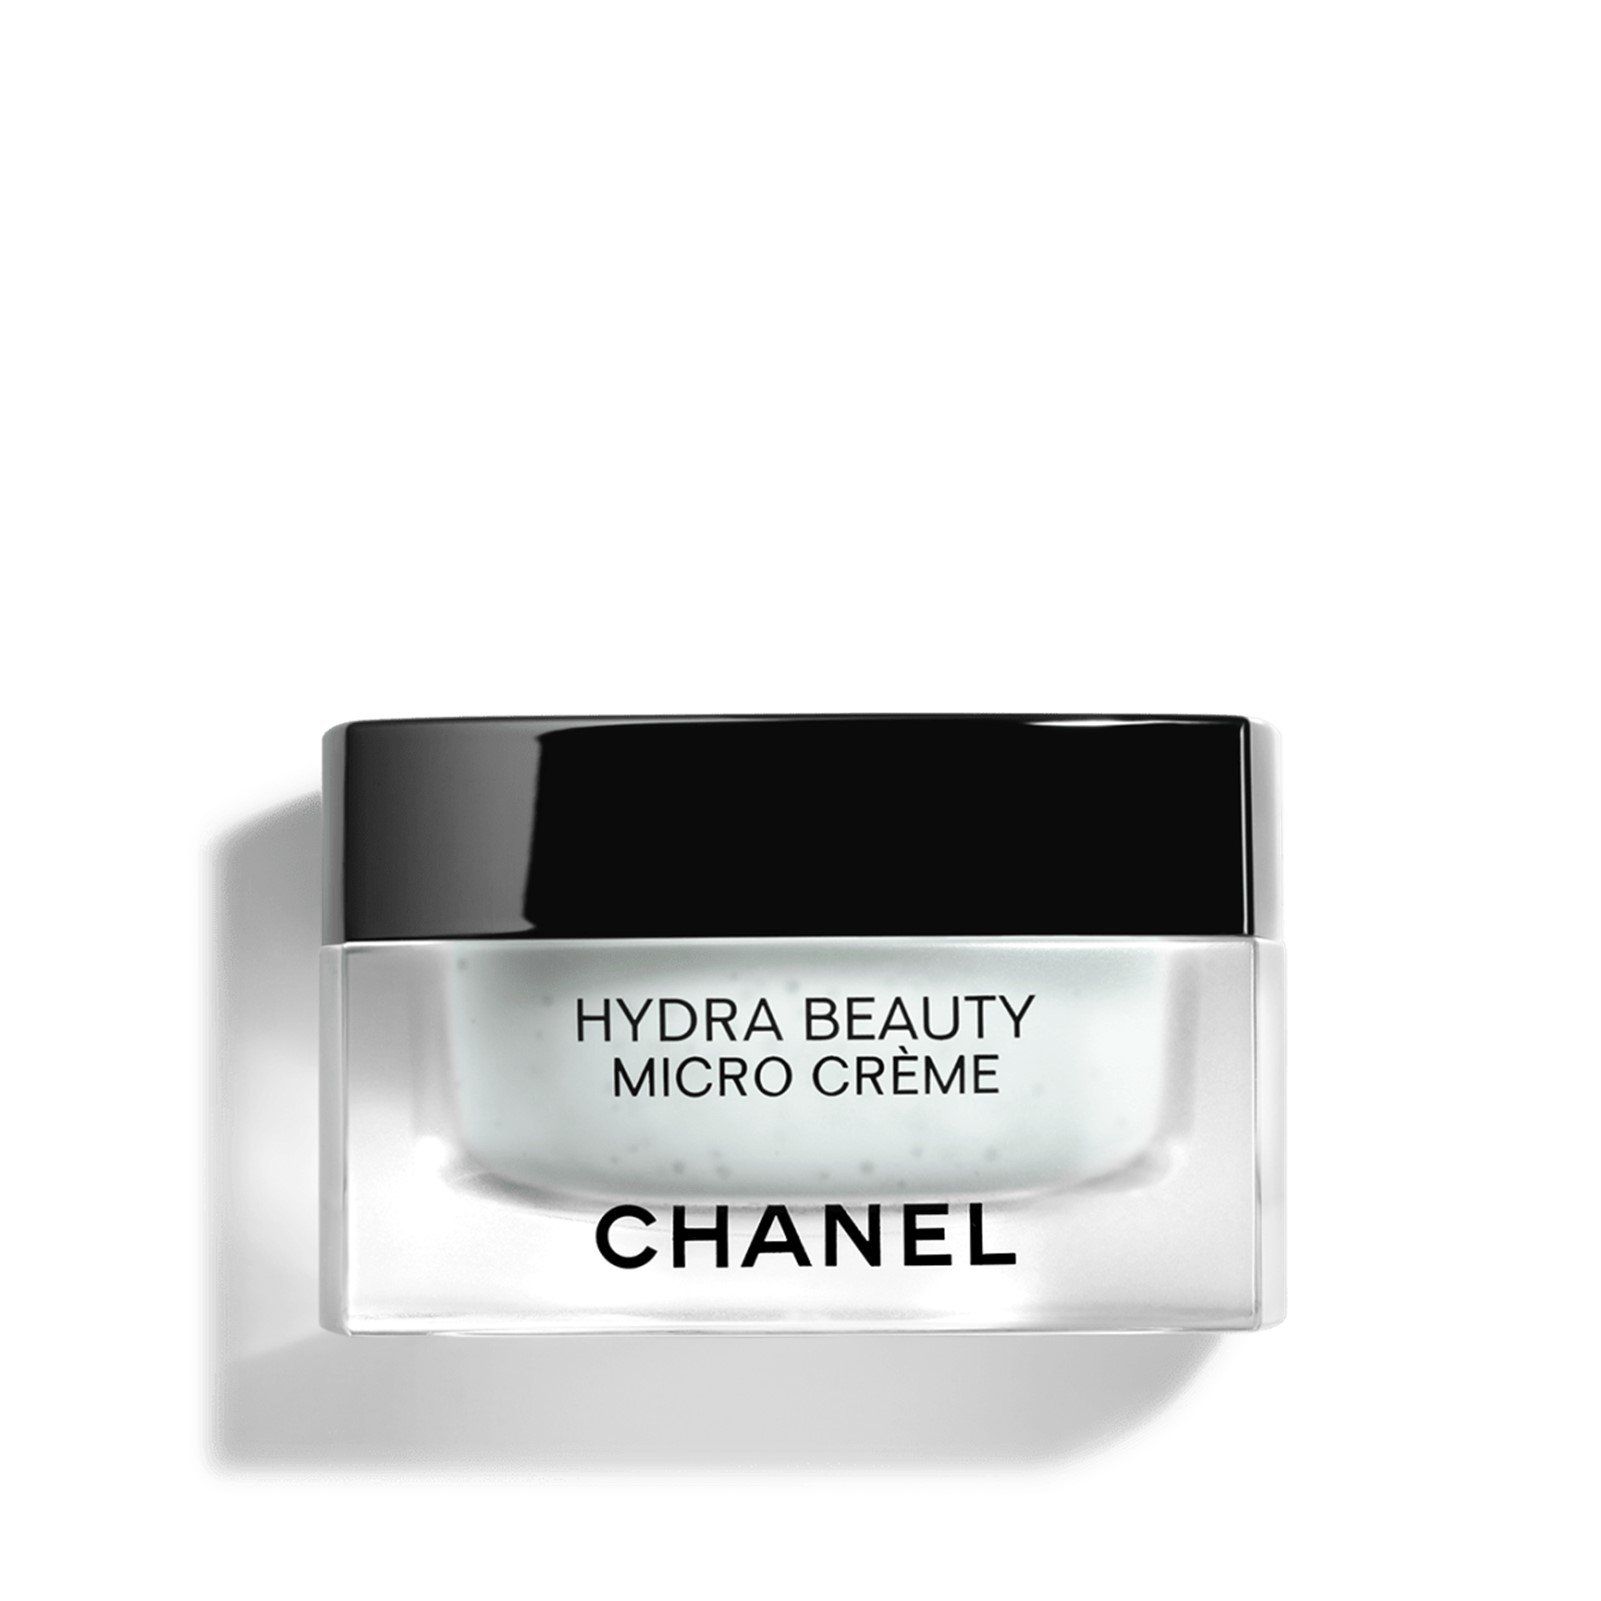 Chia sẻ với hơn 56 về hydra beauty chanel prezzo hay nhất   cdgdbentreeduvn